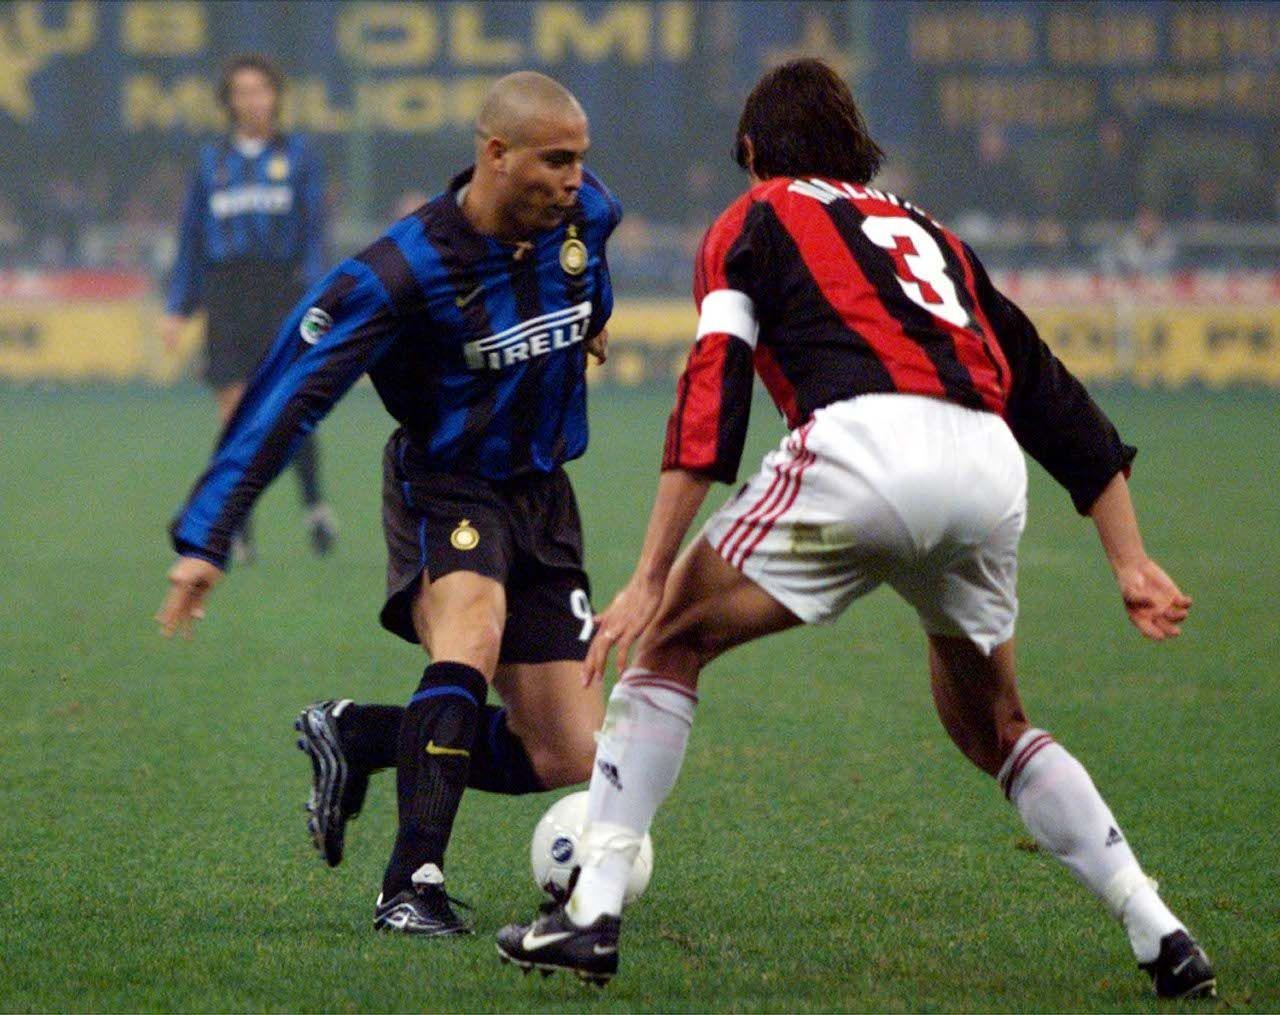 Paolo Maldini v Ronaldo Milan V Inter Milan. A+ football